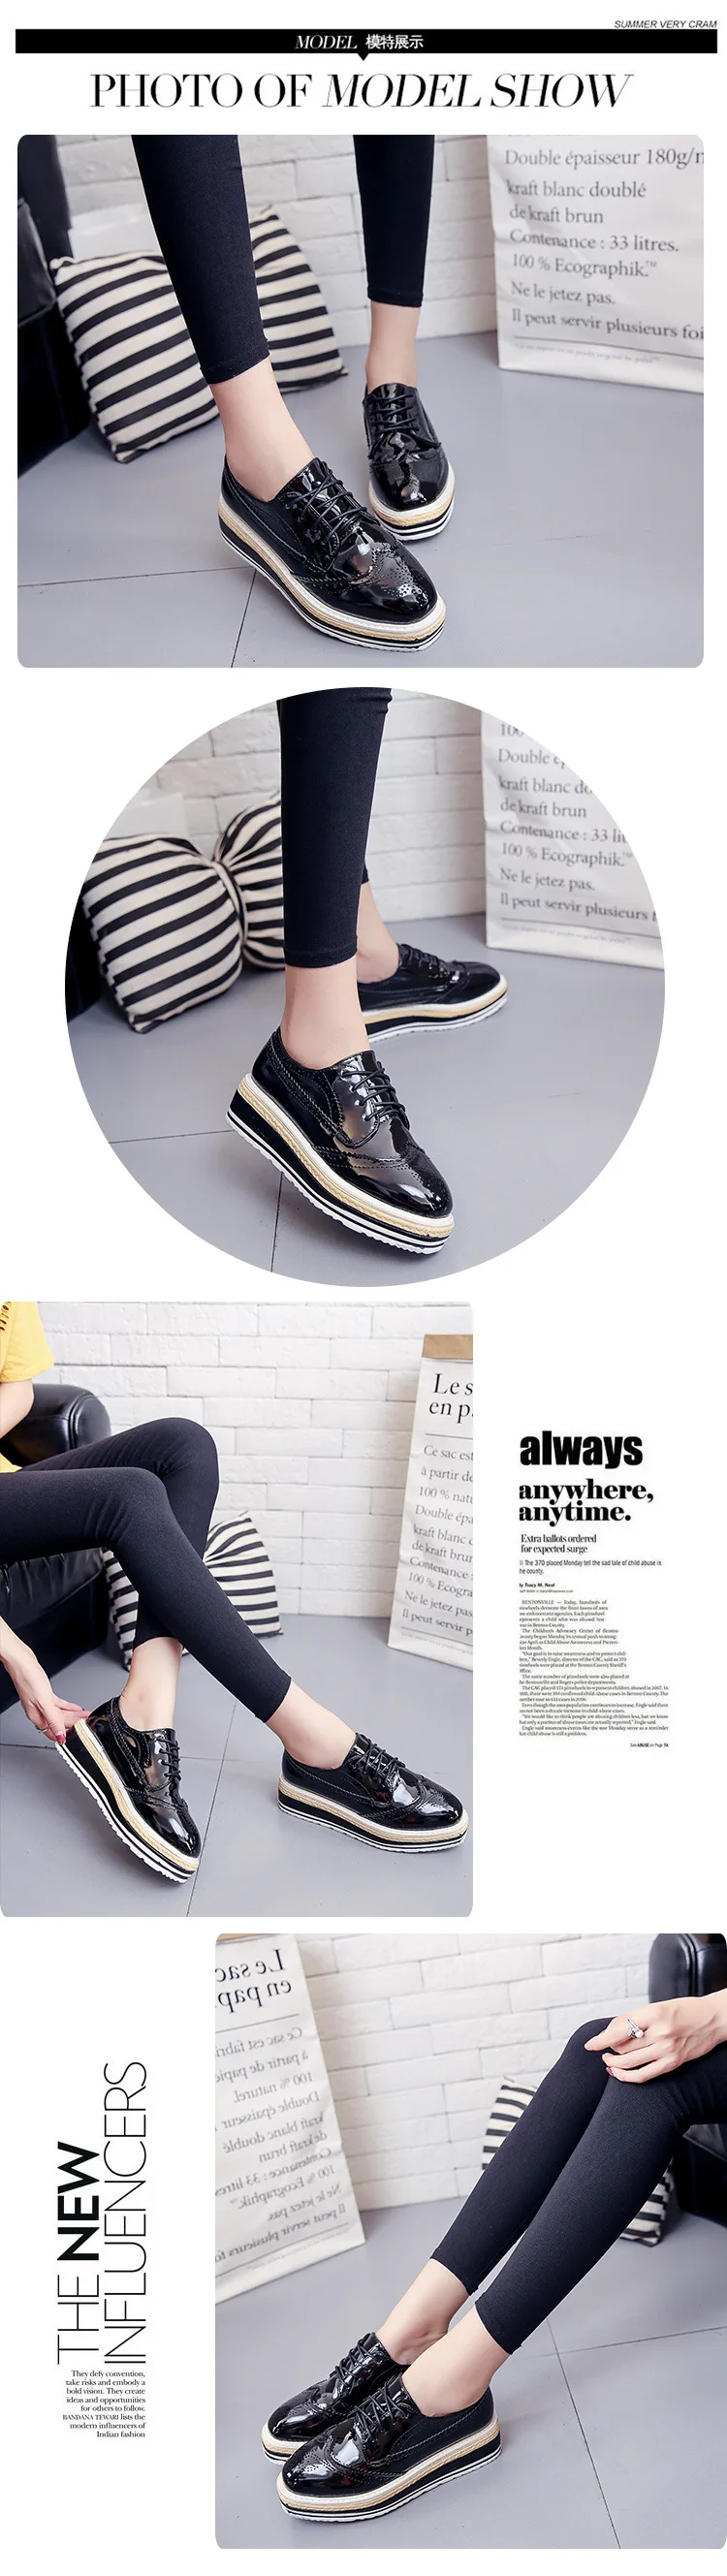 LCIZRONG/весенние повседневные женские туфли из лакированной кожи на плоской платформе, на шнуровке, с квадратным носком; цвет черный, золотой, серебряный; обувь на толстой подошве из соломы